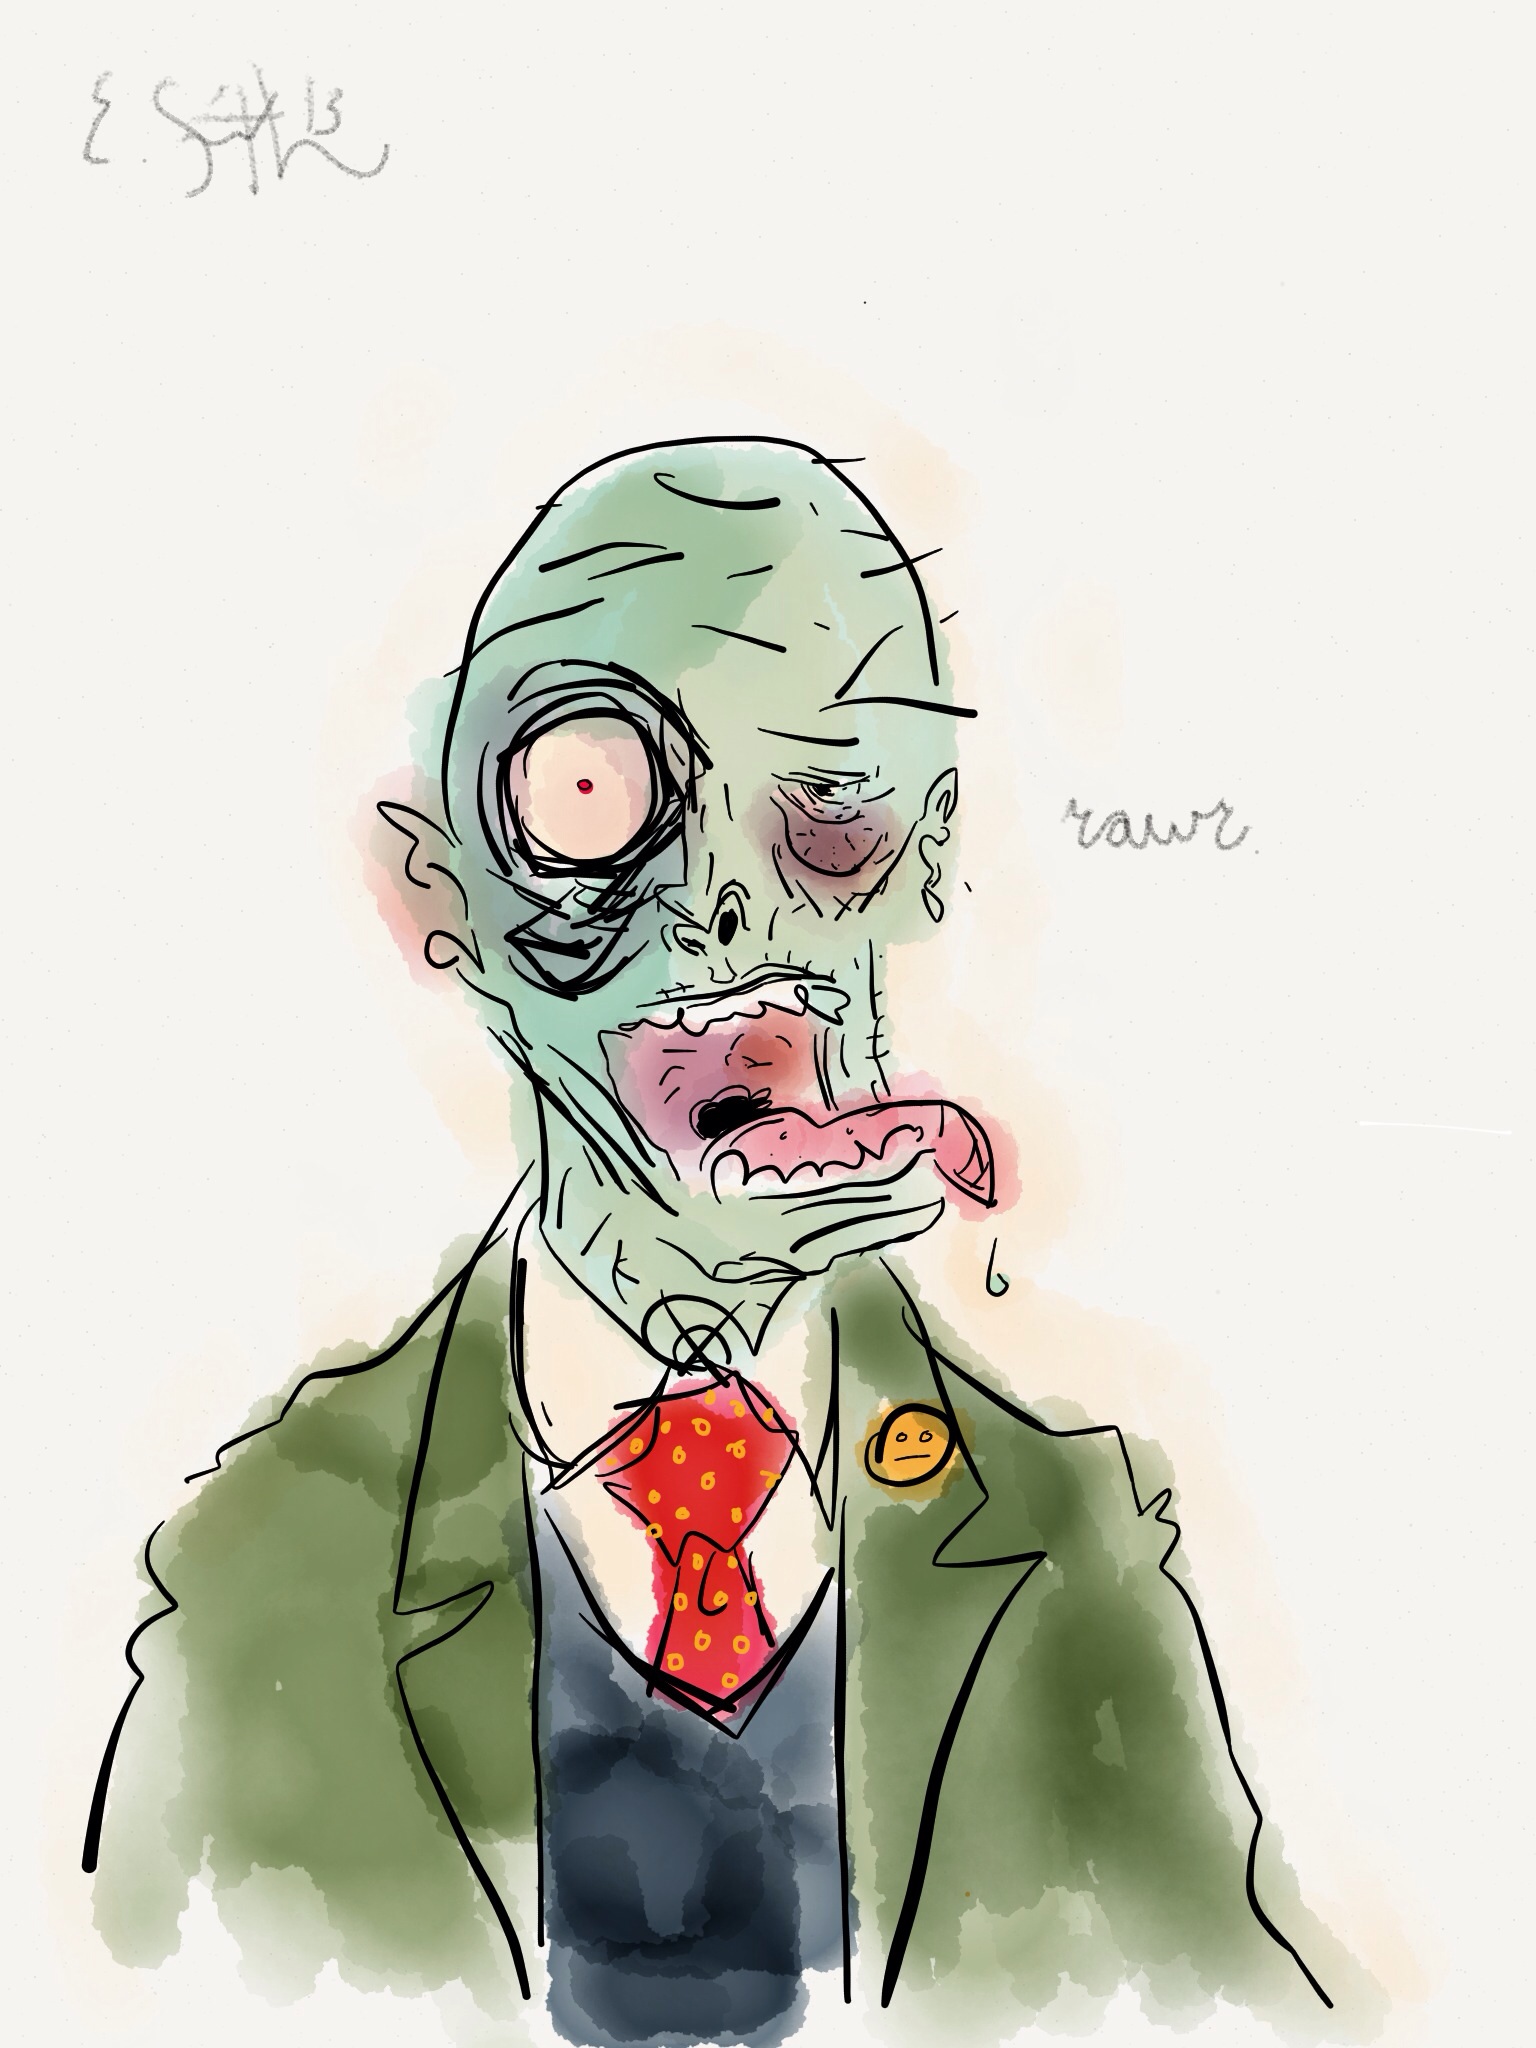 Friendly Zombie